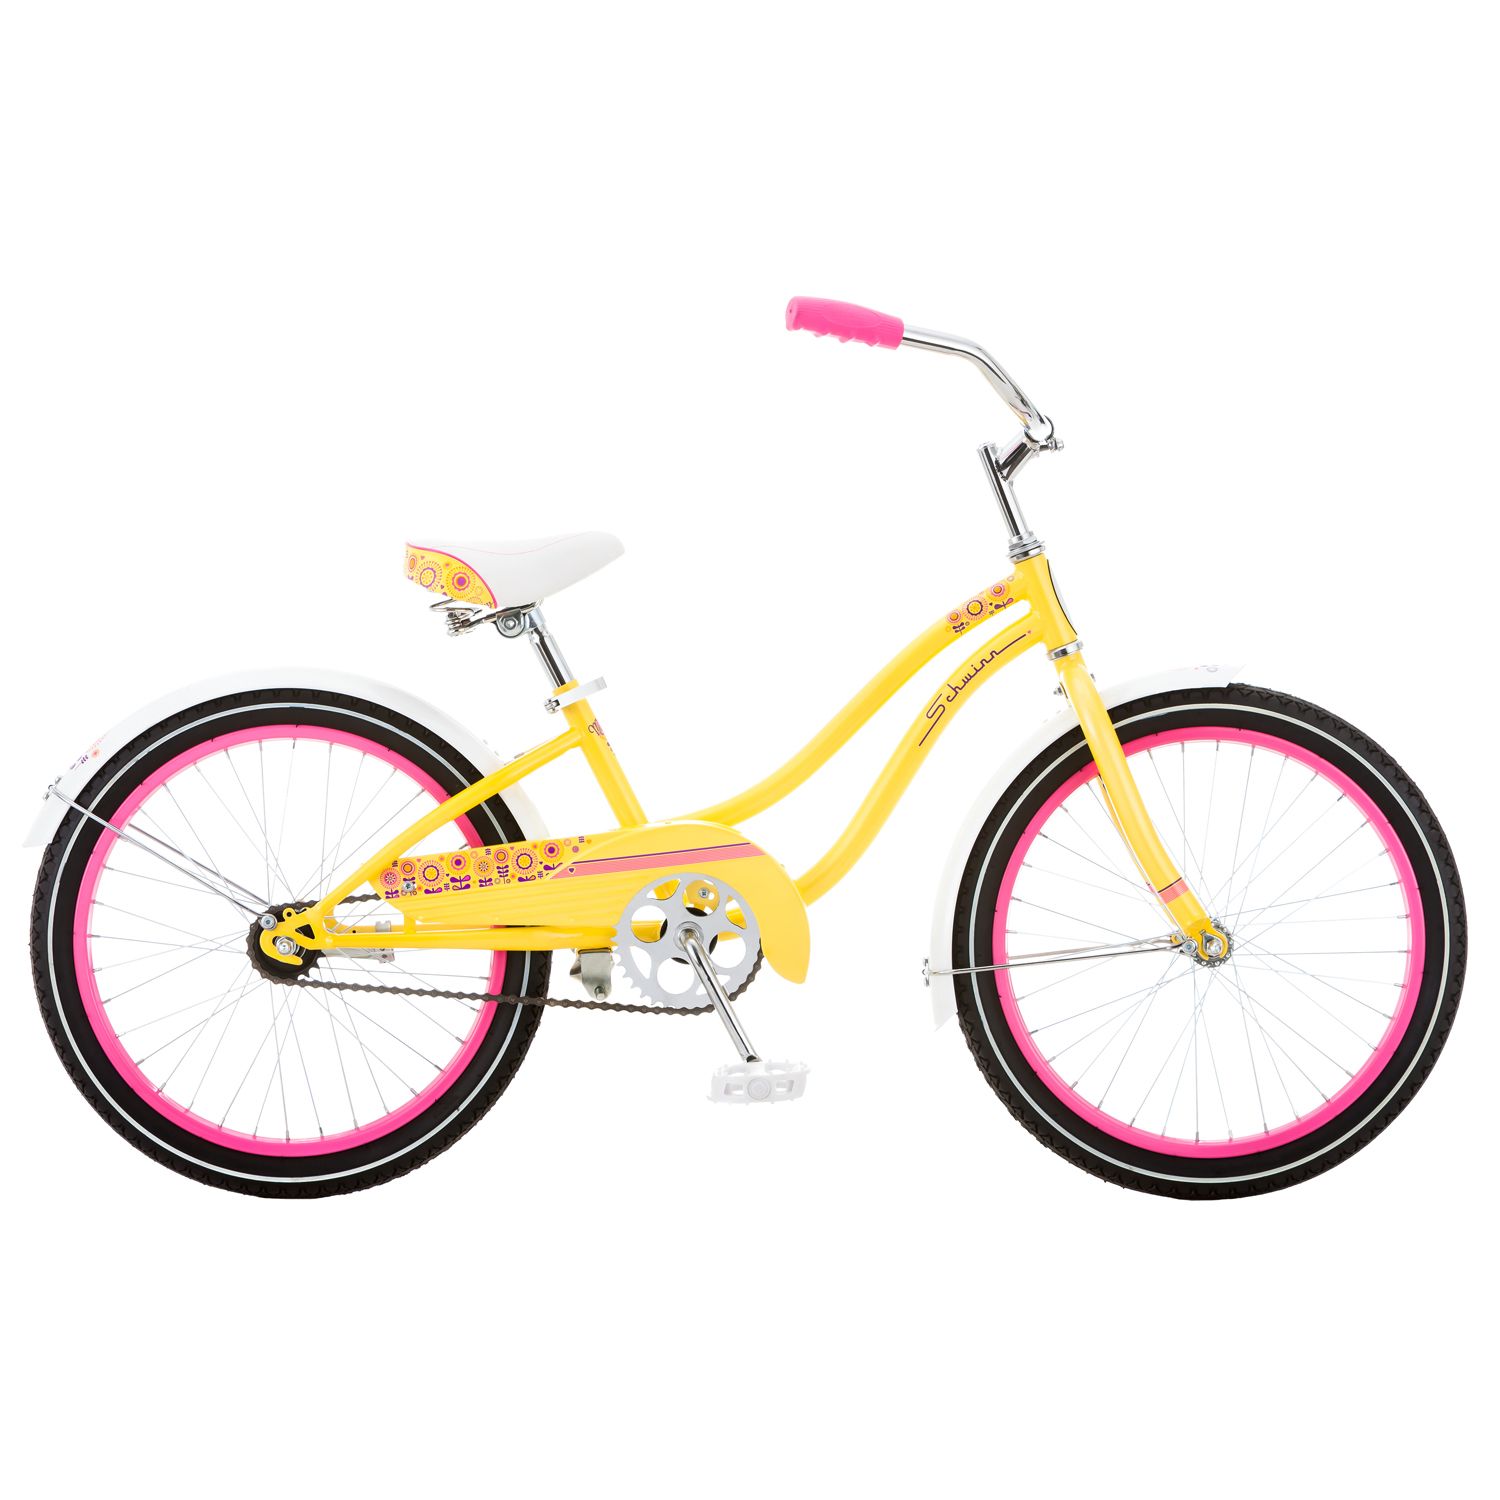 yellow cruiser bike